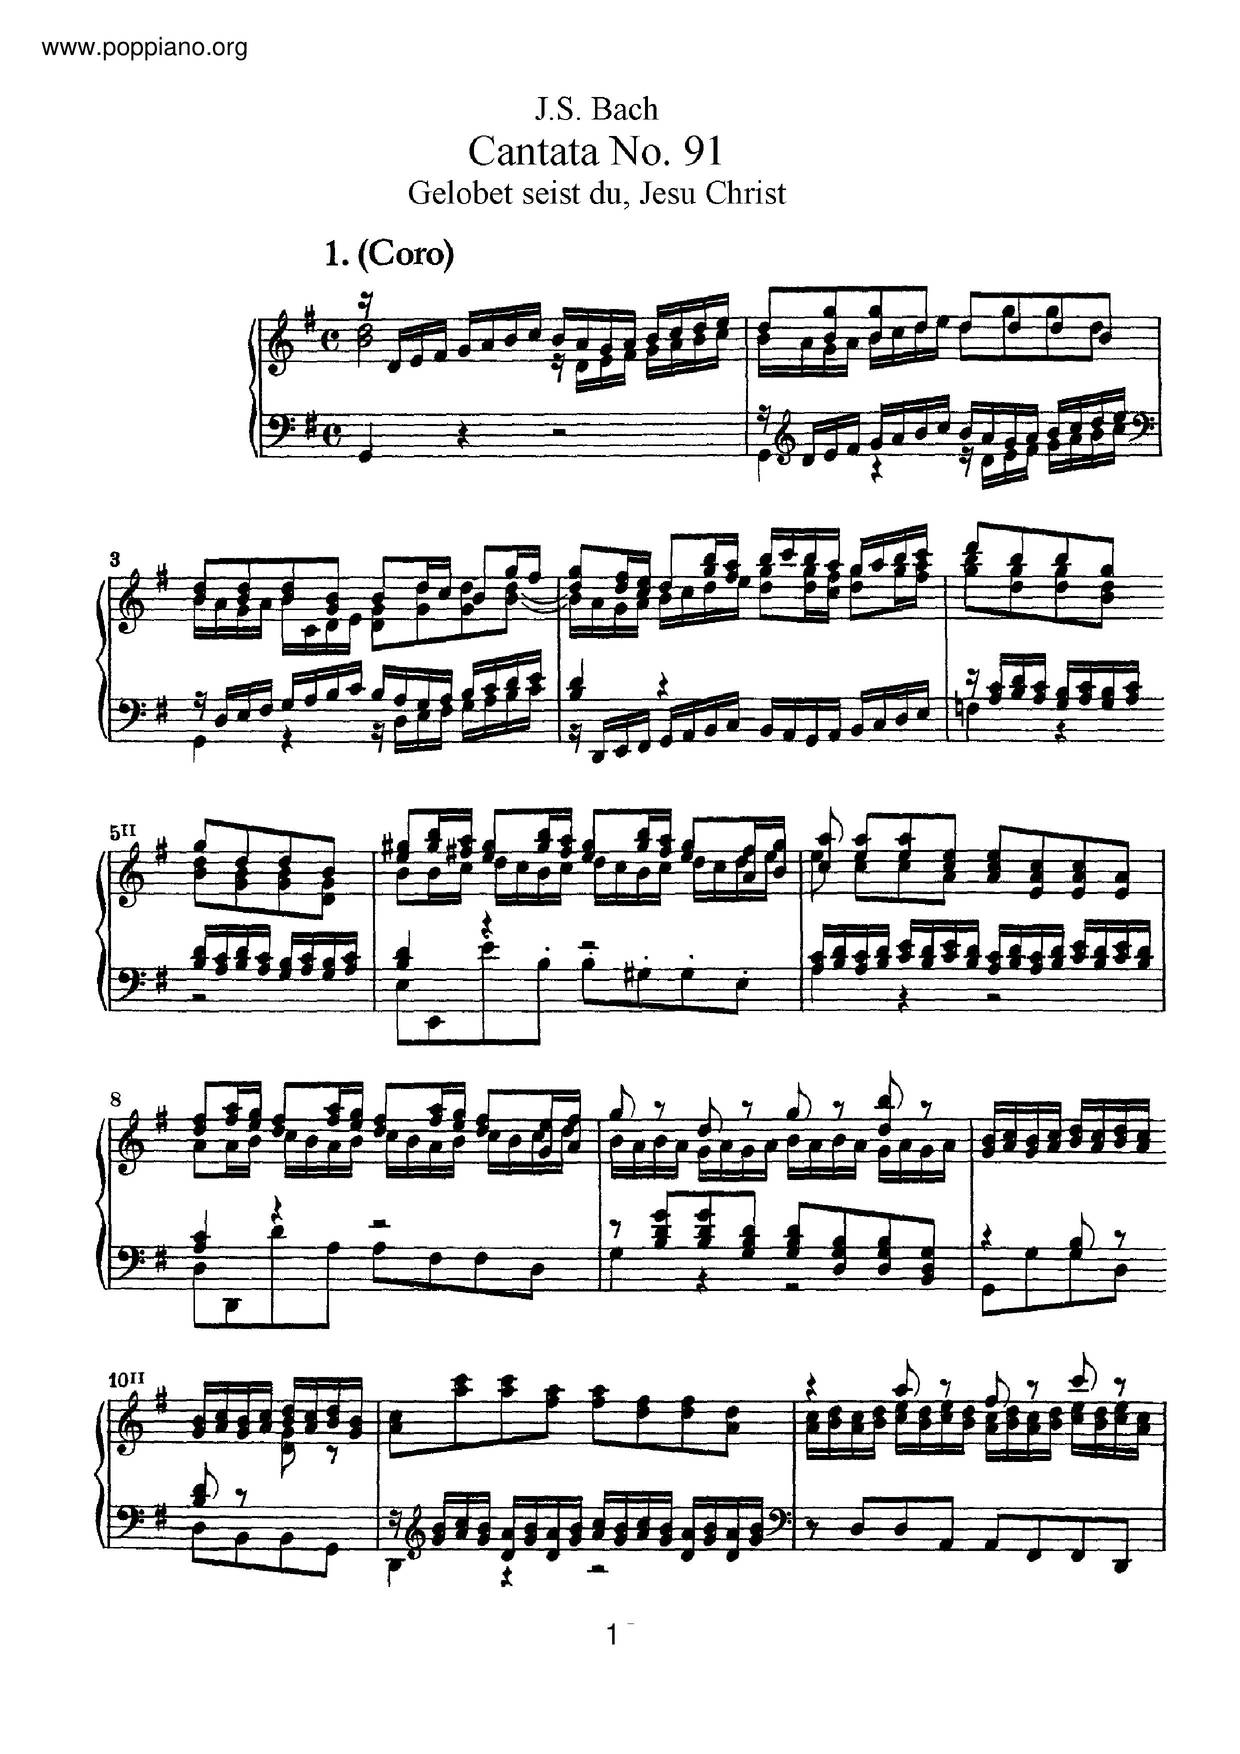 Gelobet Seist Du, Jesu Christ, BWV 91 Score